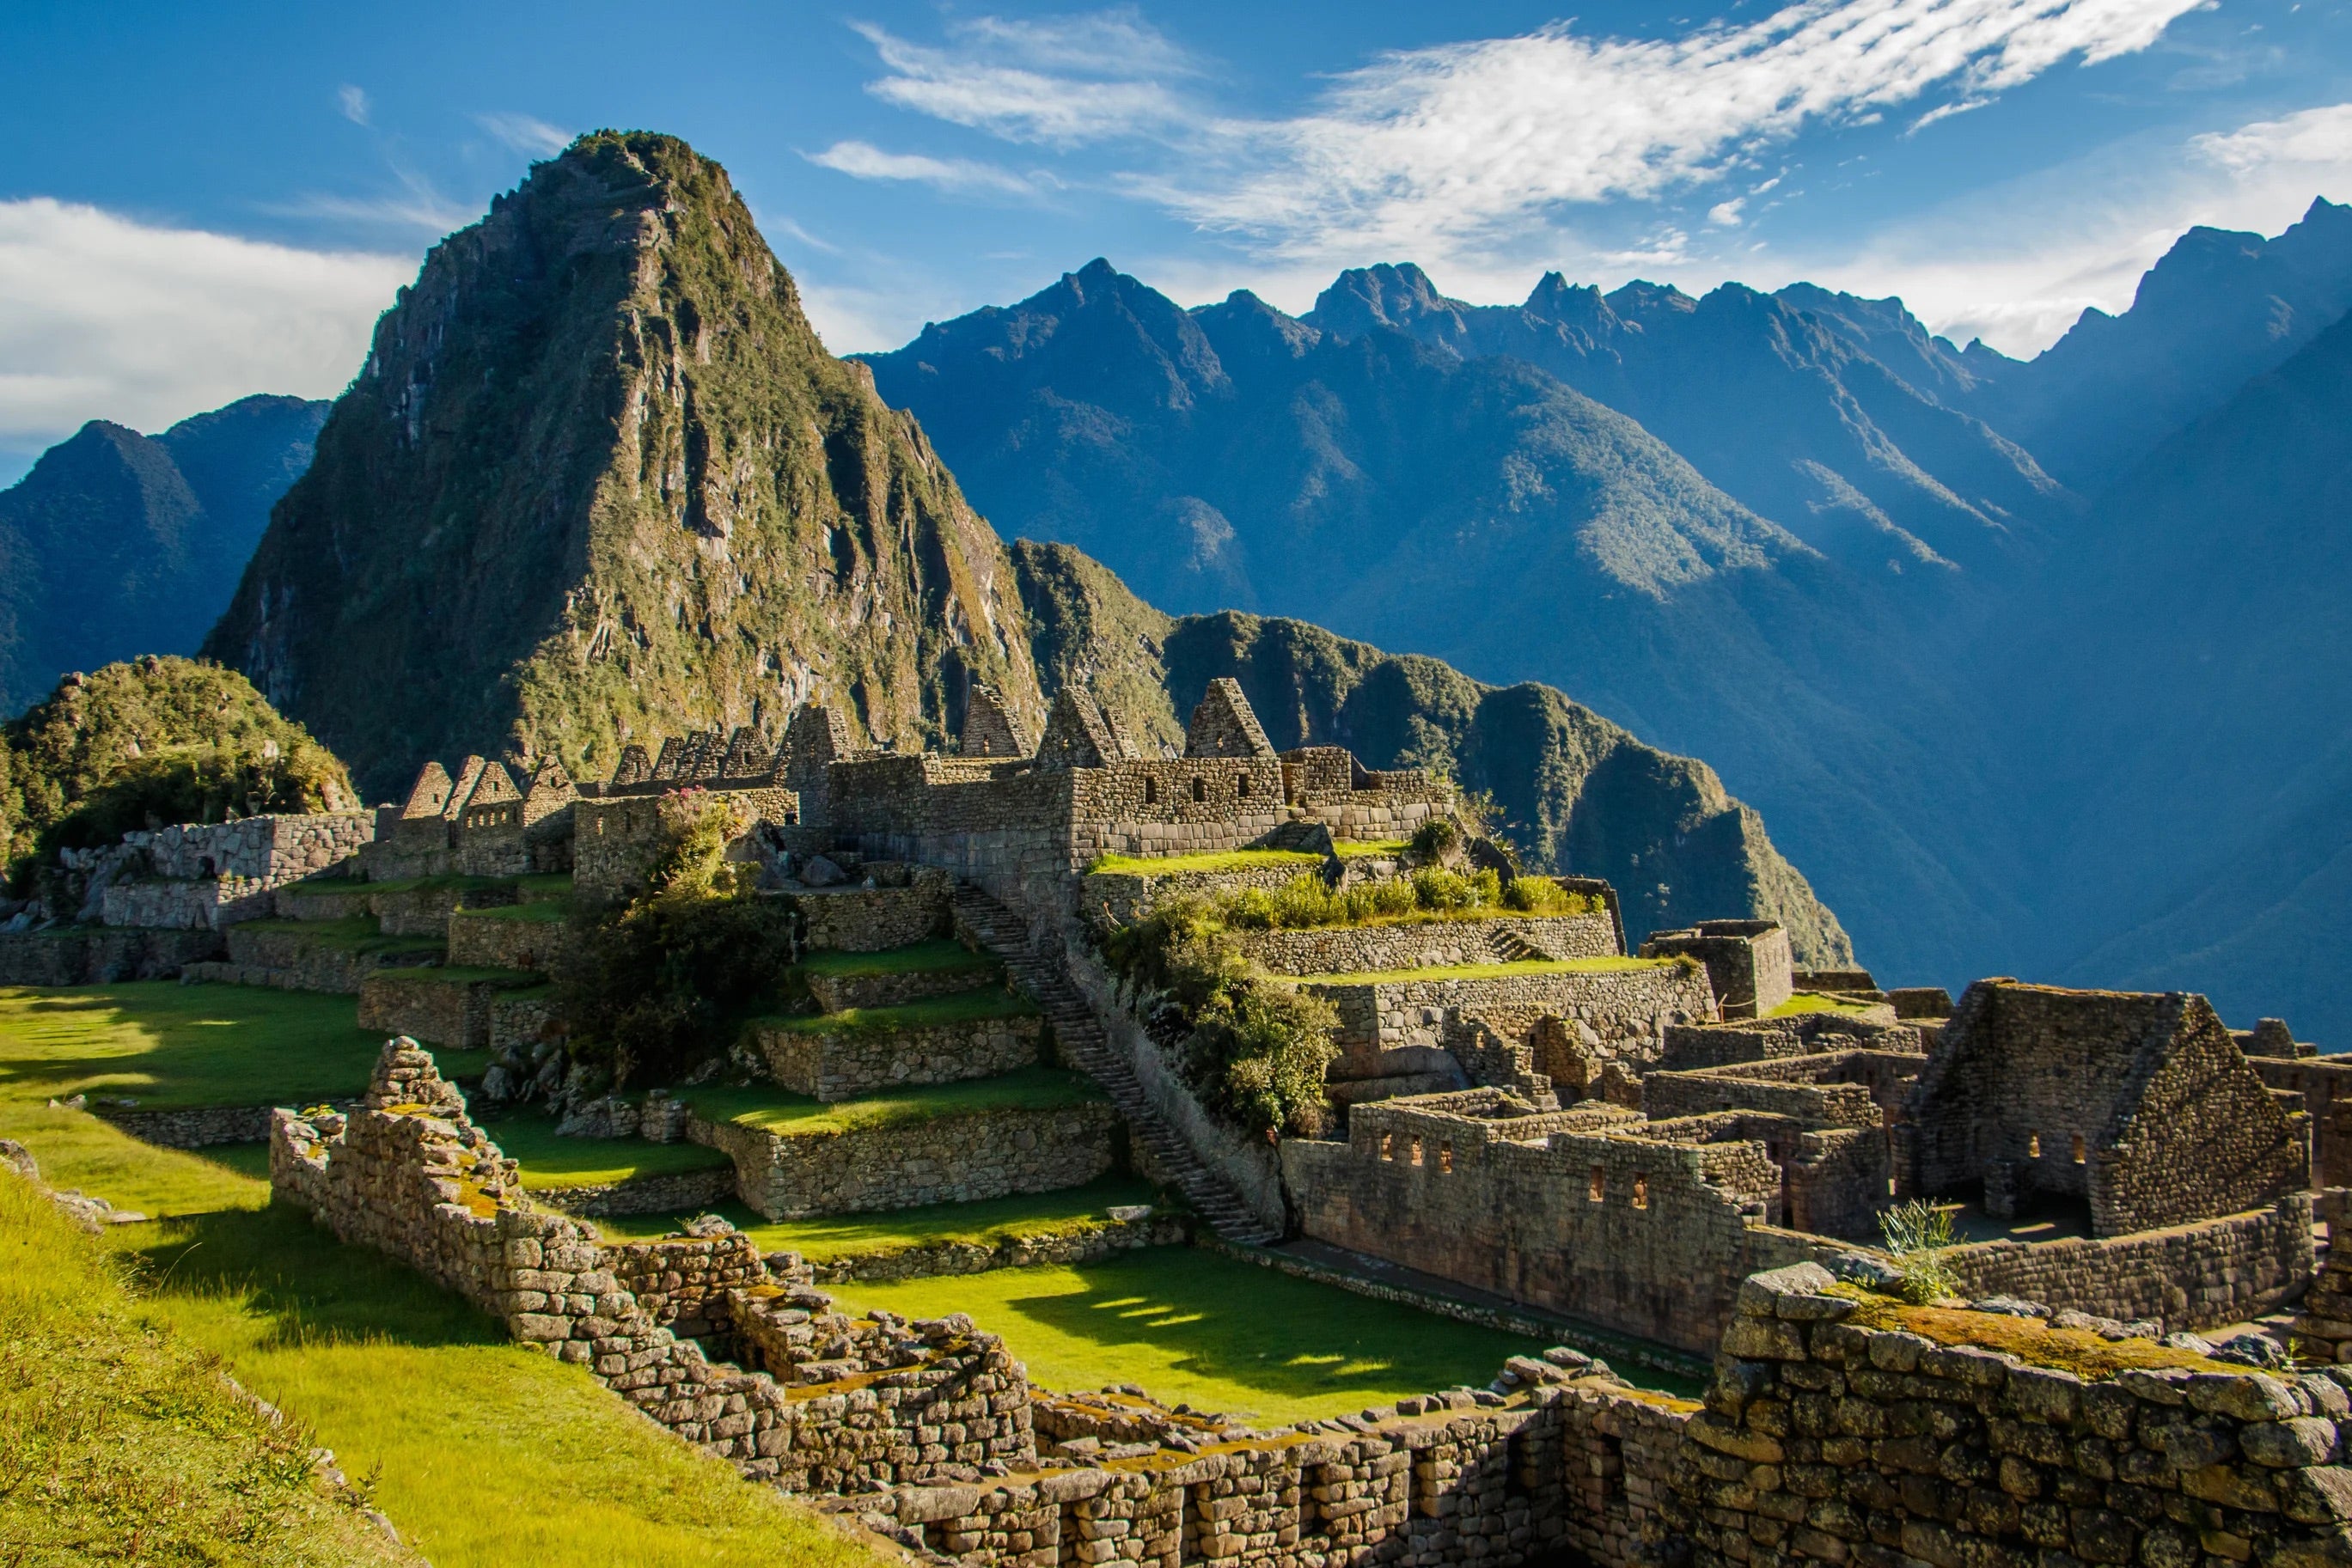 The ruins of Machu Picchu in Peru.